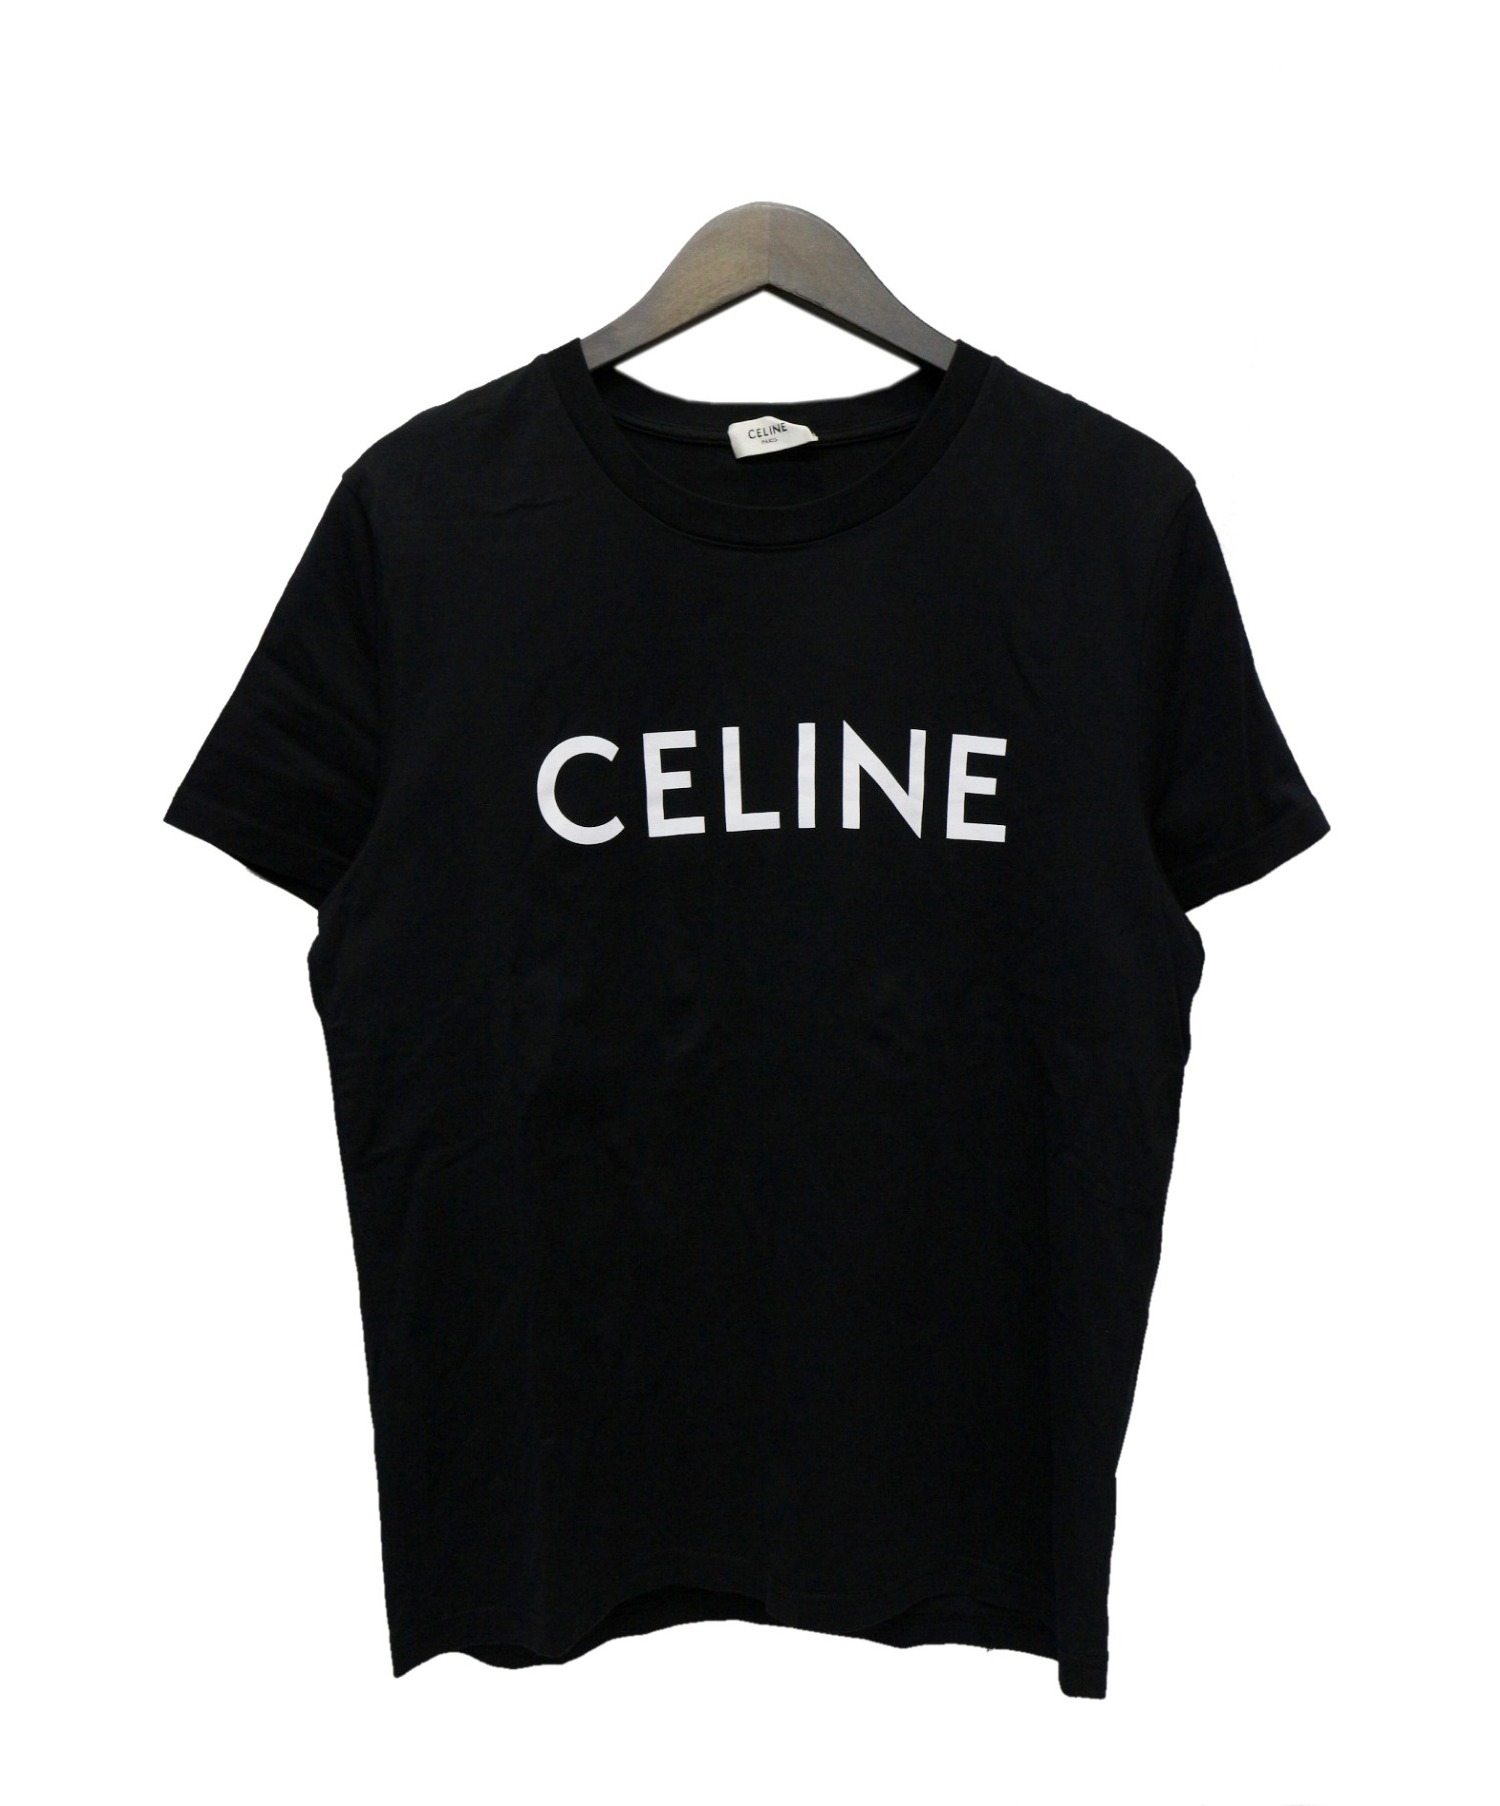 新品CELINE Tシャツ Lサイズ